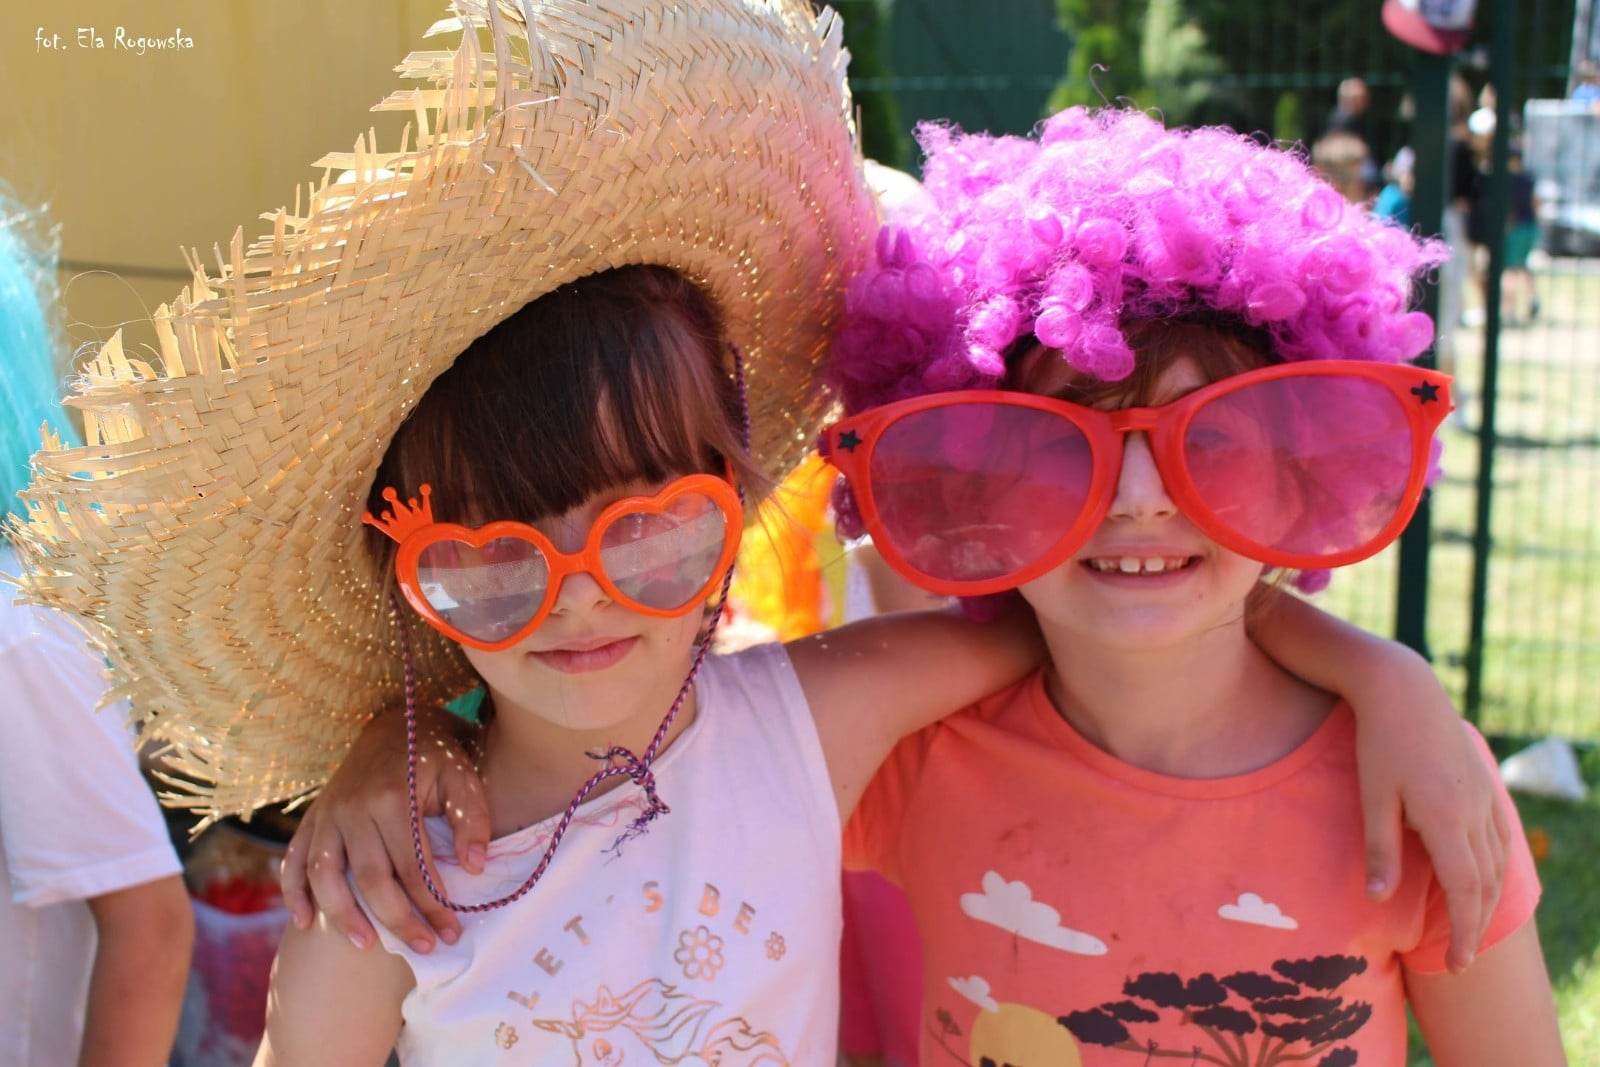 Dwie dziewczynki w okularach, ubrane w kapelusz i perukę czekają na zdjęcie z fotbudki.